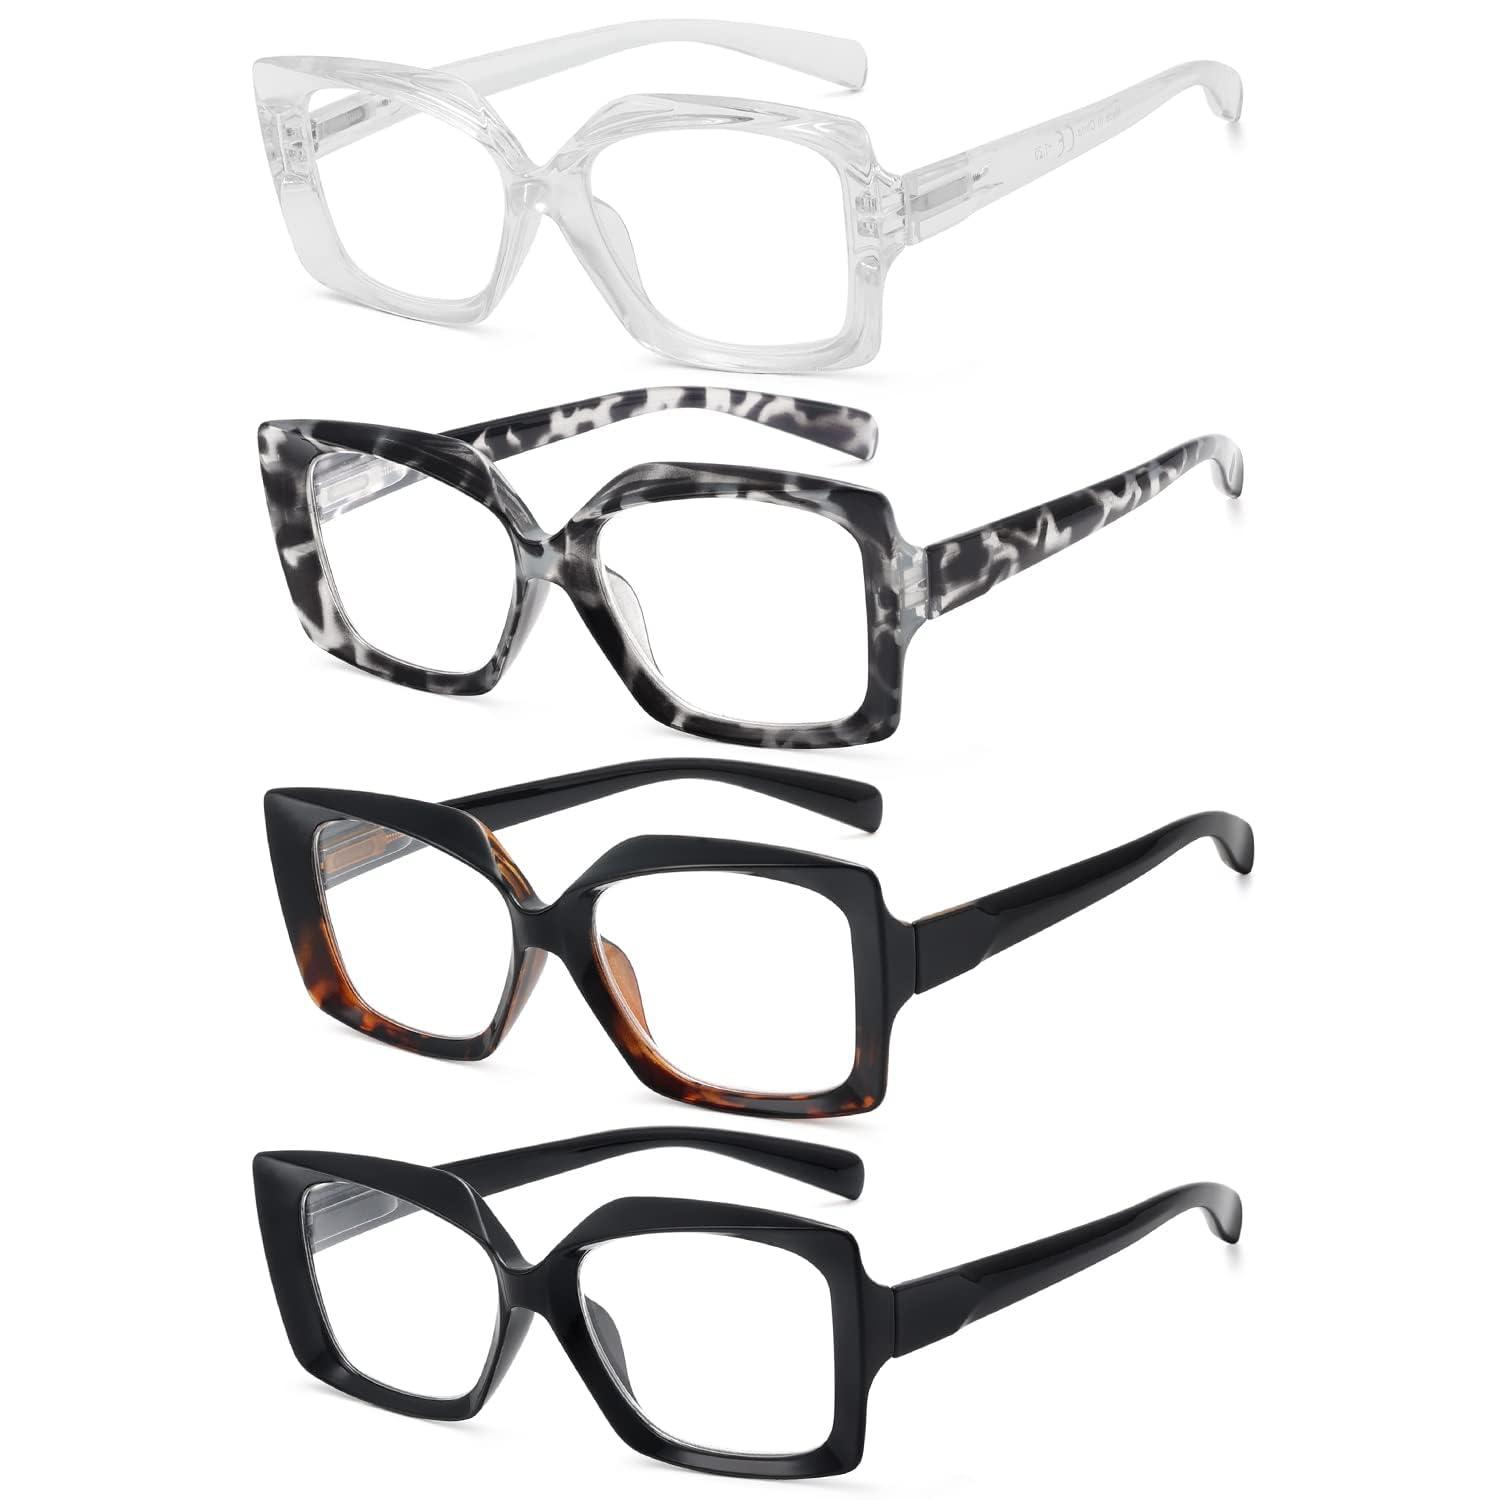 Eyekepper 4 Pack Reading Glasses for Women Reading - Ladies Readers +1.00